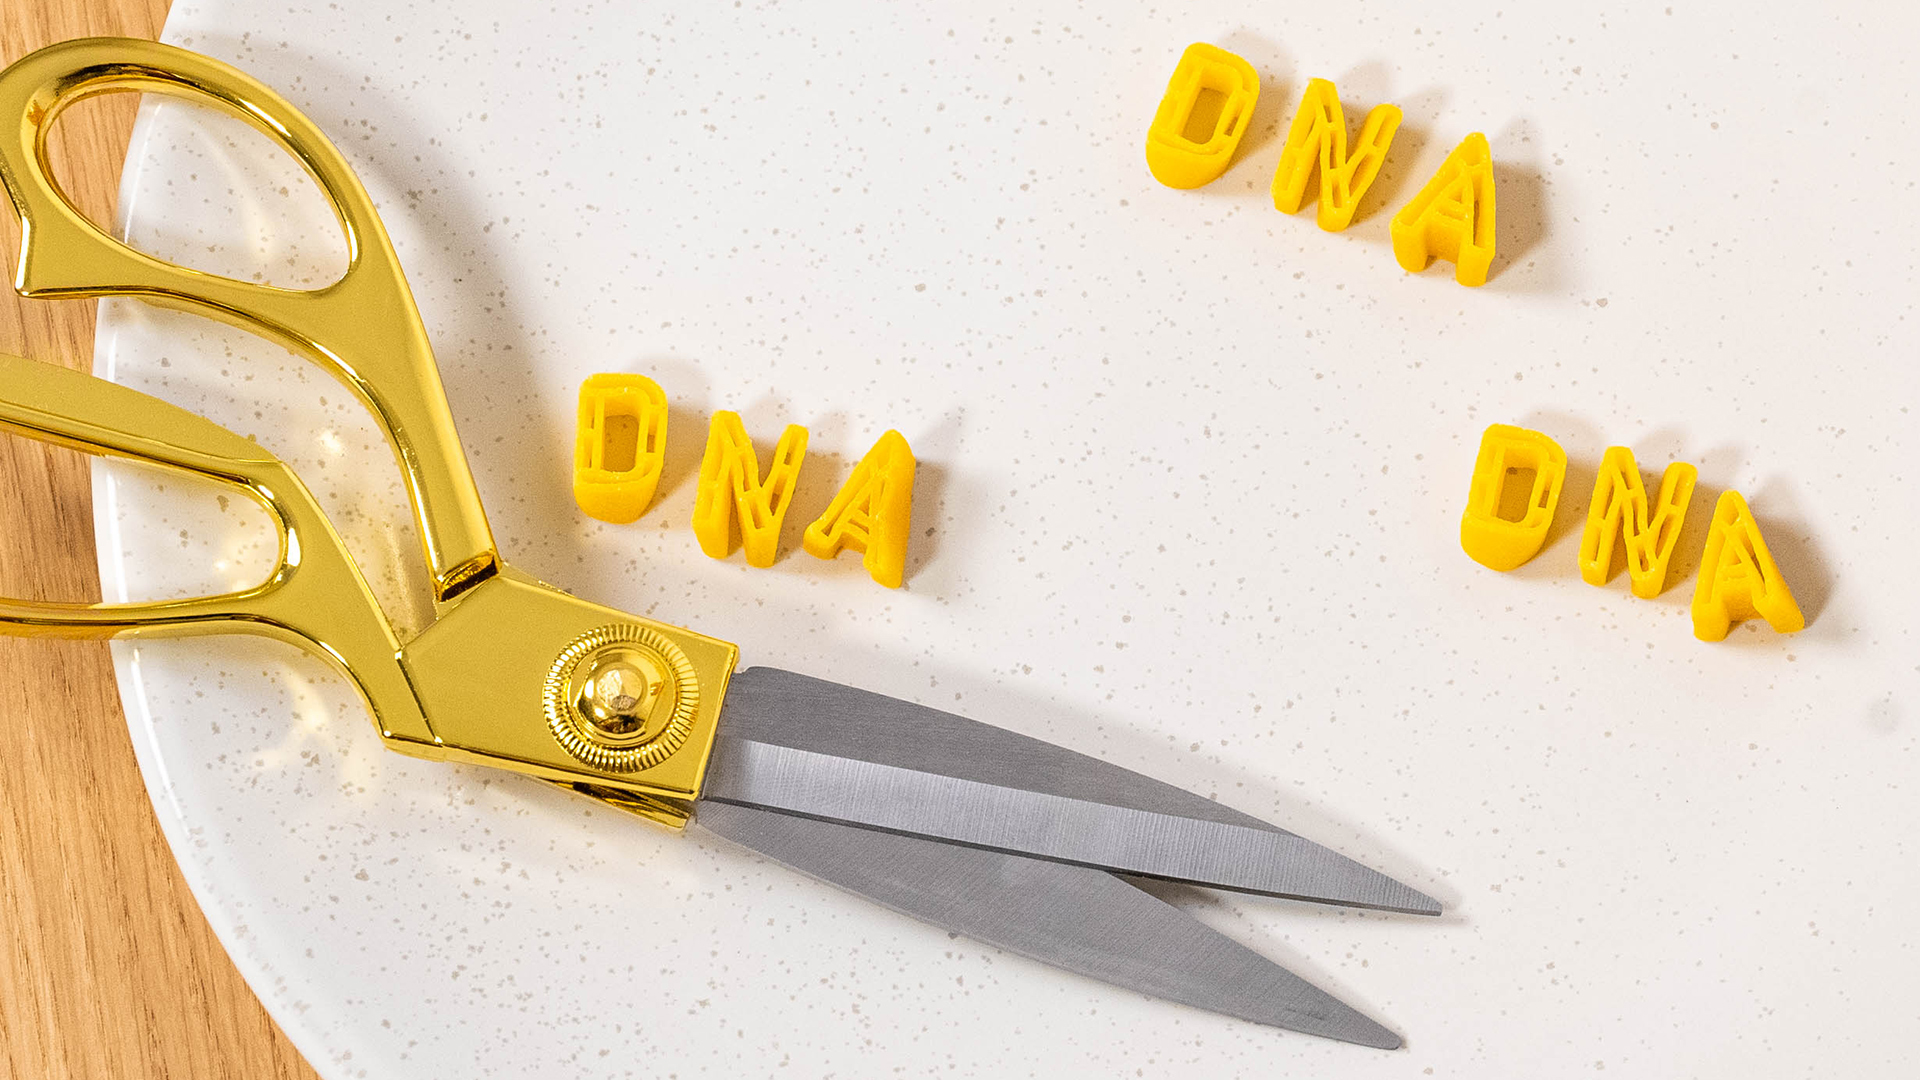 Neben einem Glas voller Nudeln steht ein Teller, darauf aus Nudeln geformt das Wort "DNA" und eine Schere.